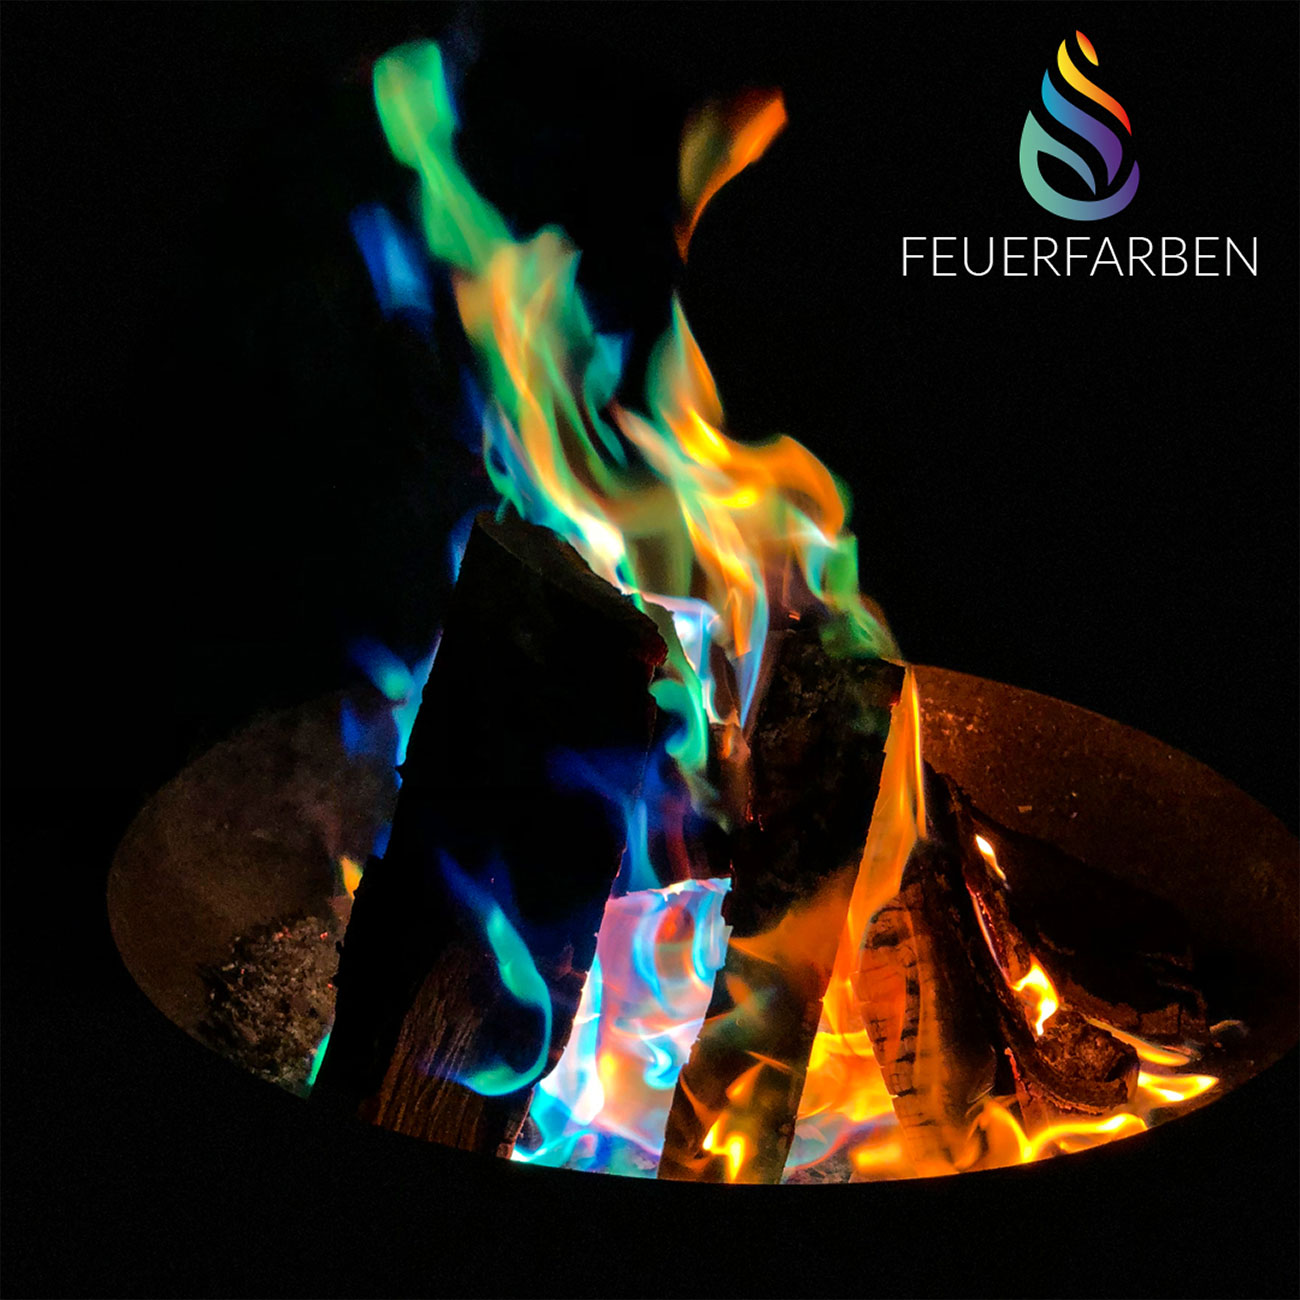   Feuerfarben Pulver 250g für bunte Flammen in Feuerschale, Lagerfeuer, Kaminofen, usw Bild 8